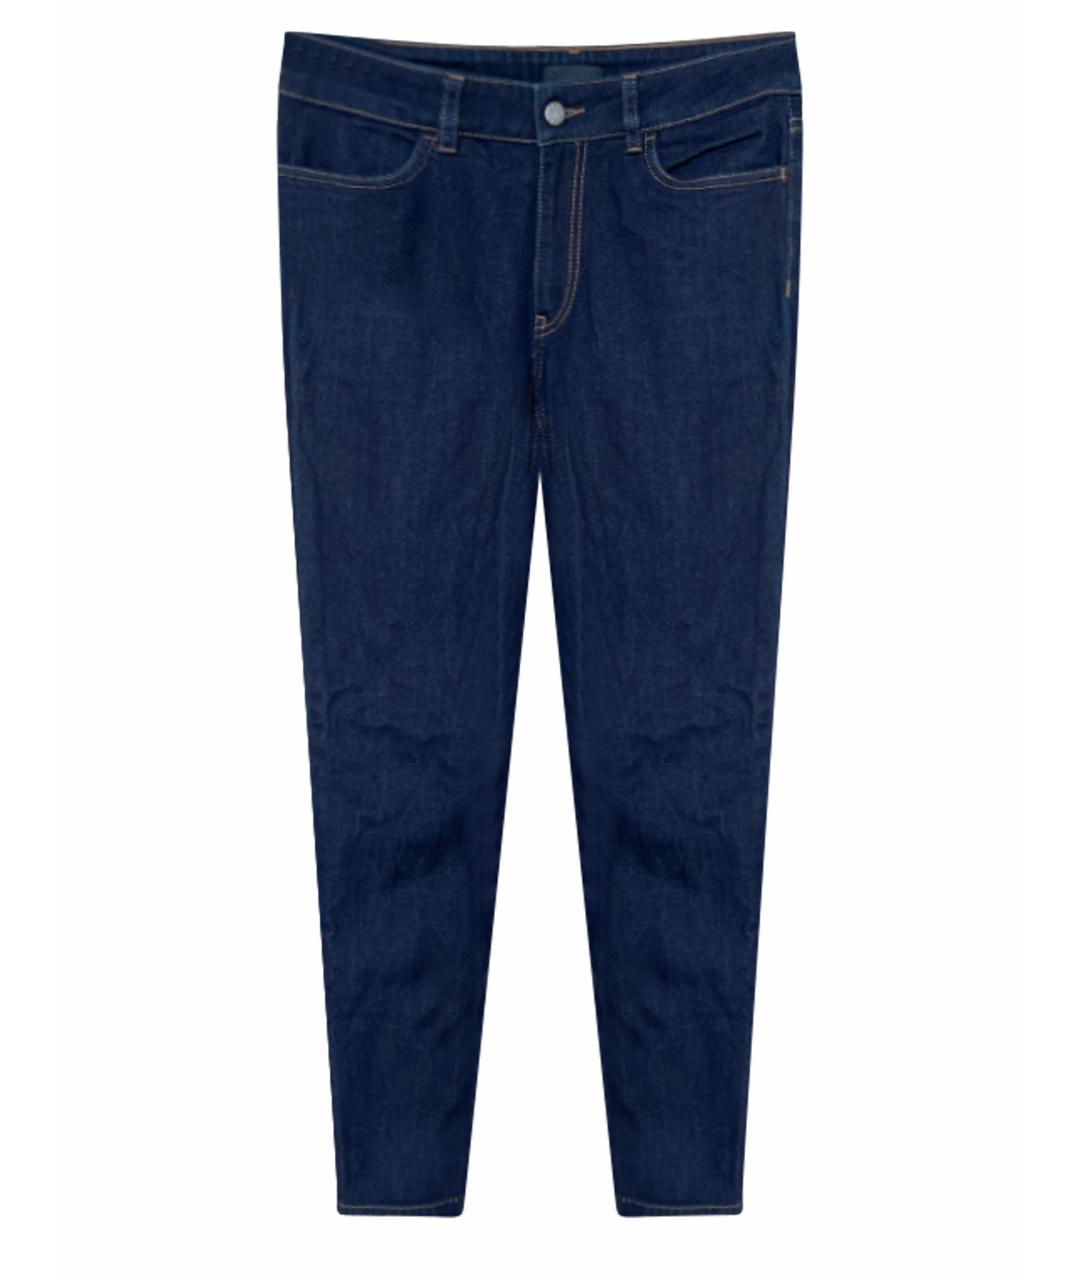 PRADA Темно-синие хлопковые джинсы слим, фото 1